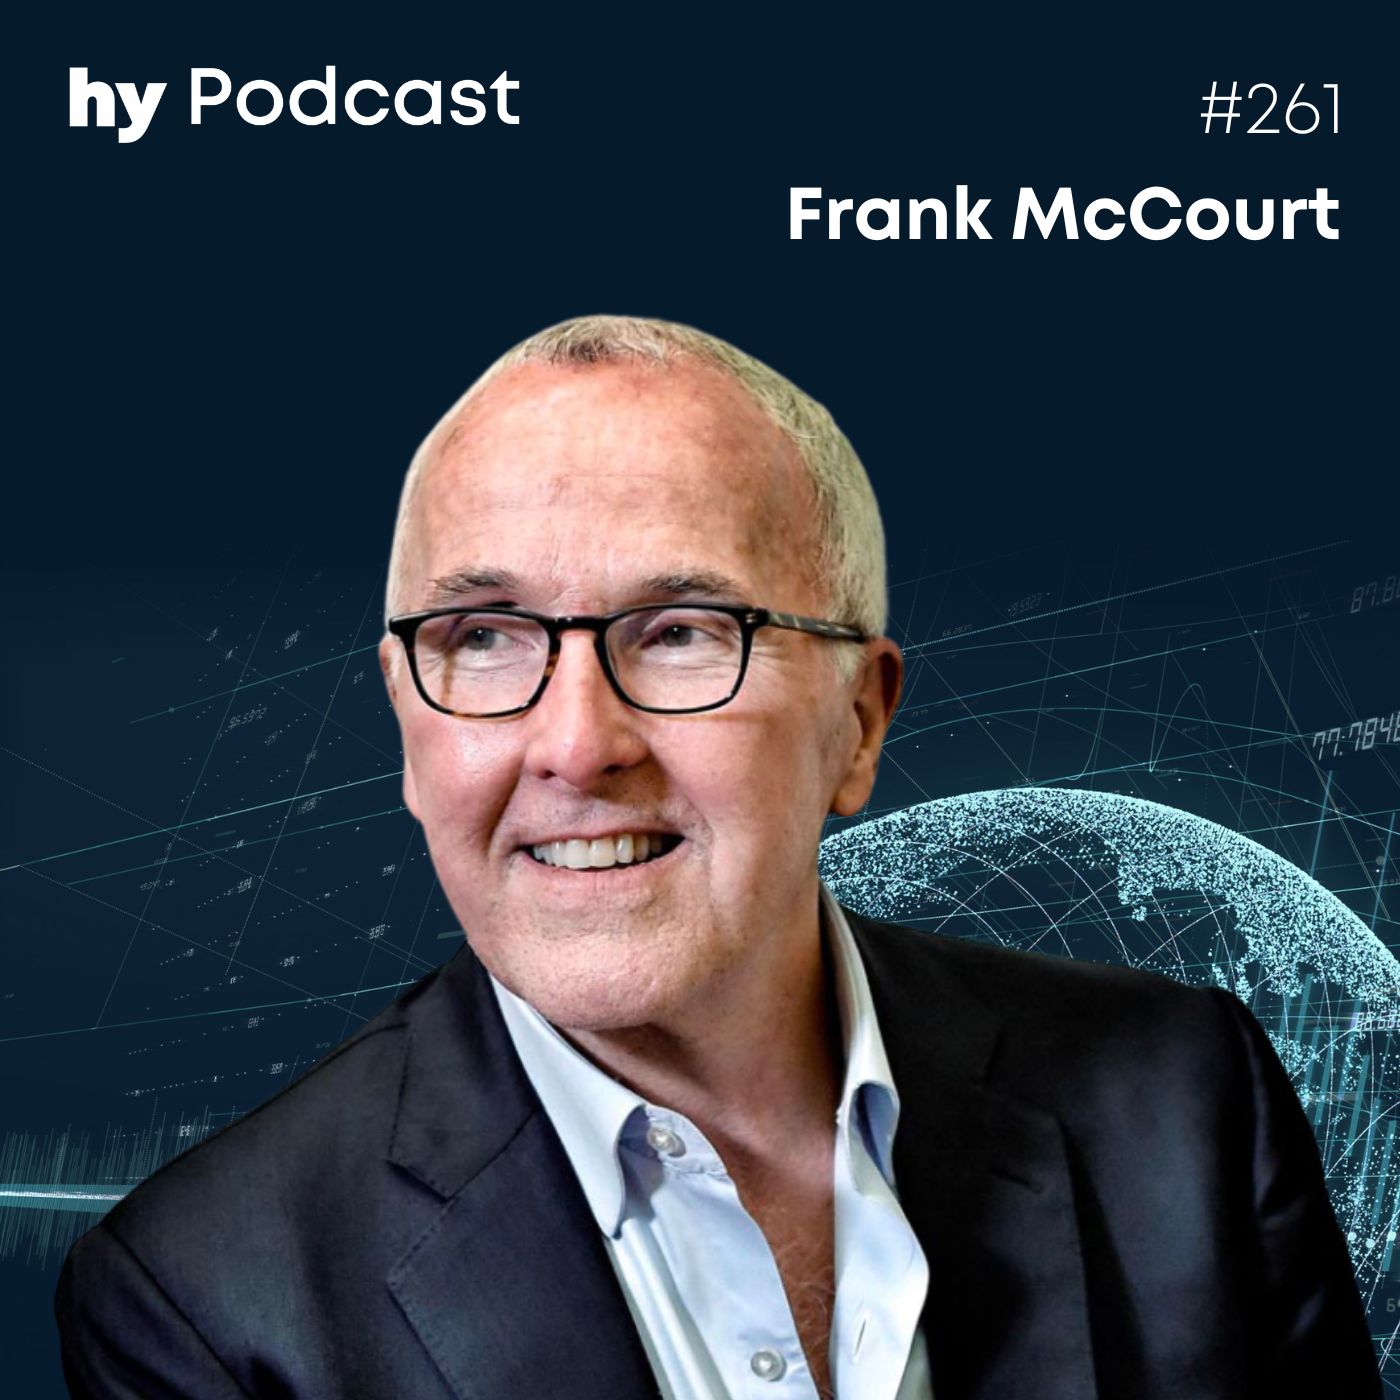 Folge 261 mit Frank McCourt: Warum wir ein neues Internet-Protokoll brauchen